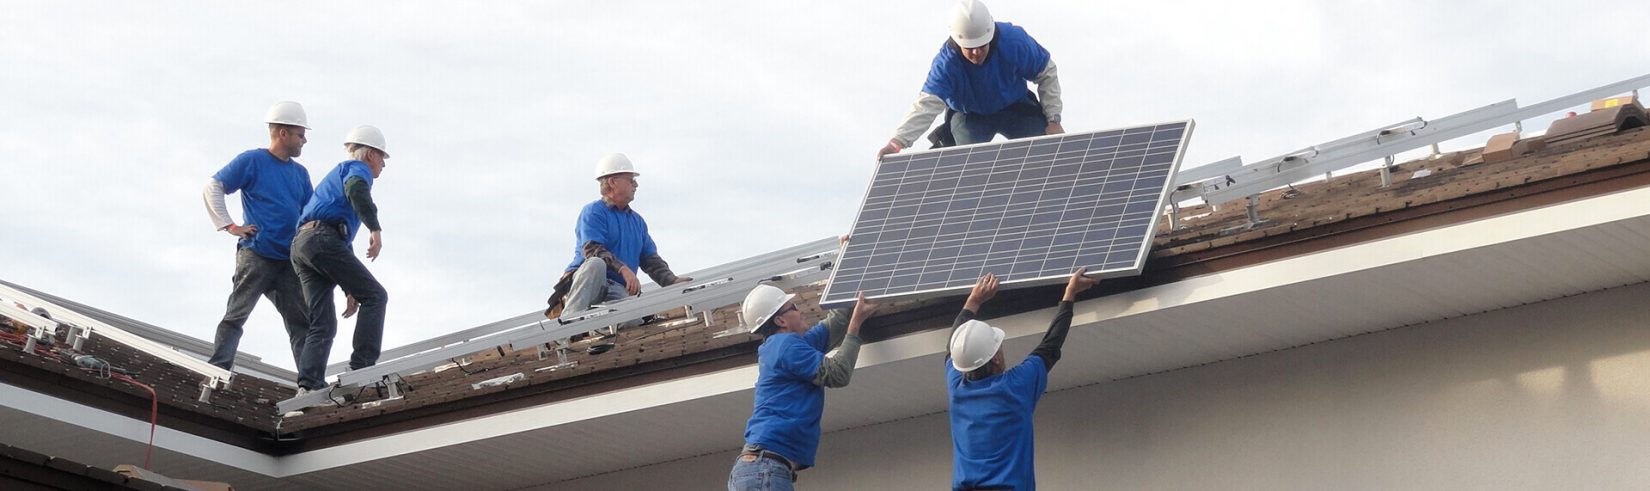 Hombres instalando paneles solares en el tejado